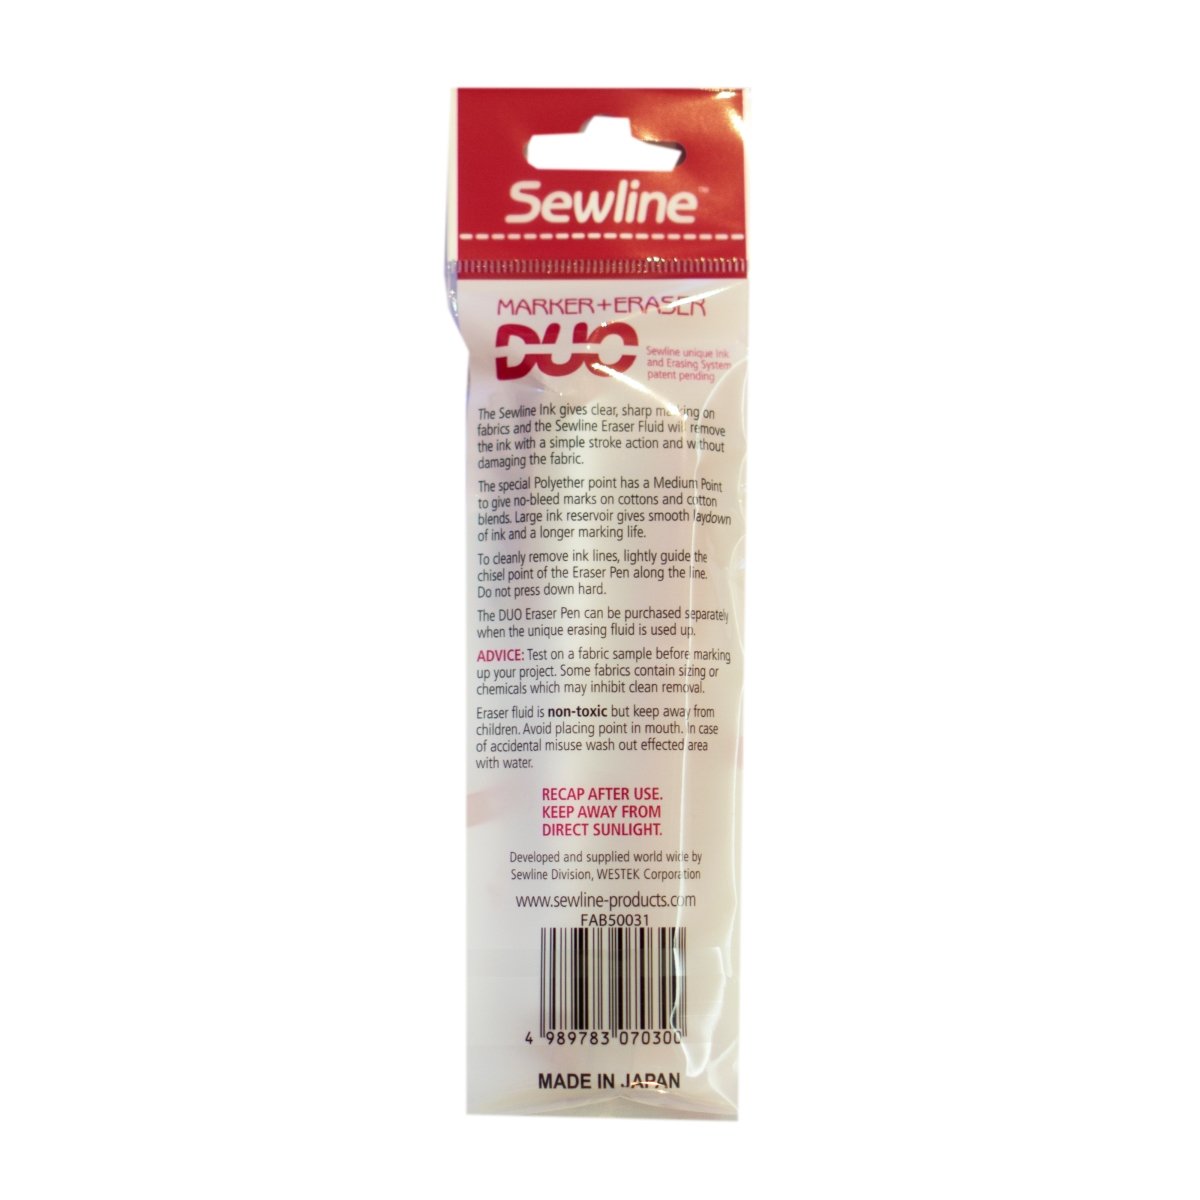 Sewline Duo Medium Point Fabric Marker + Eraser